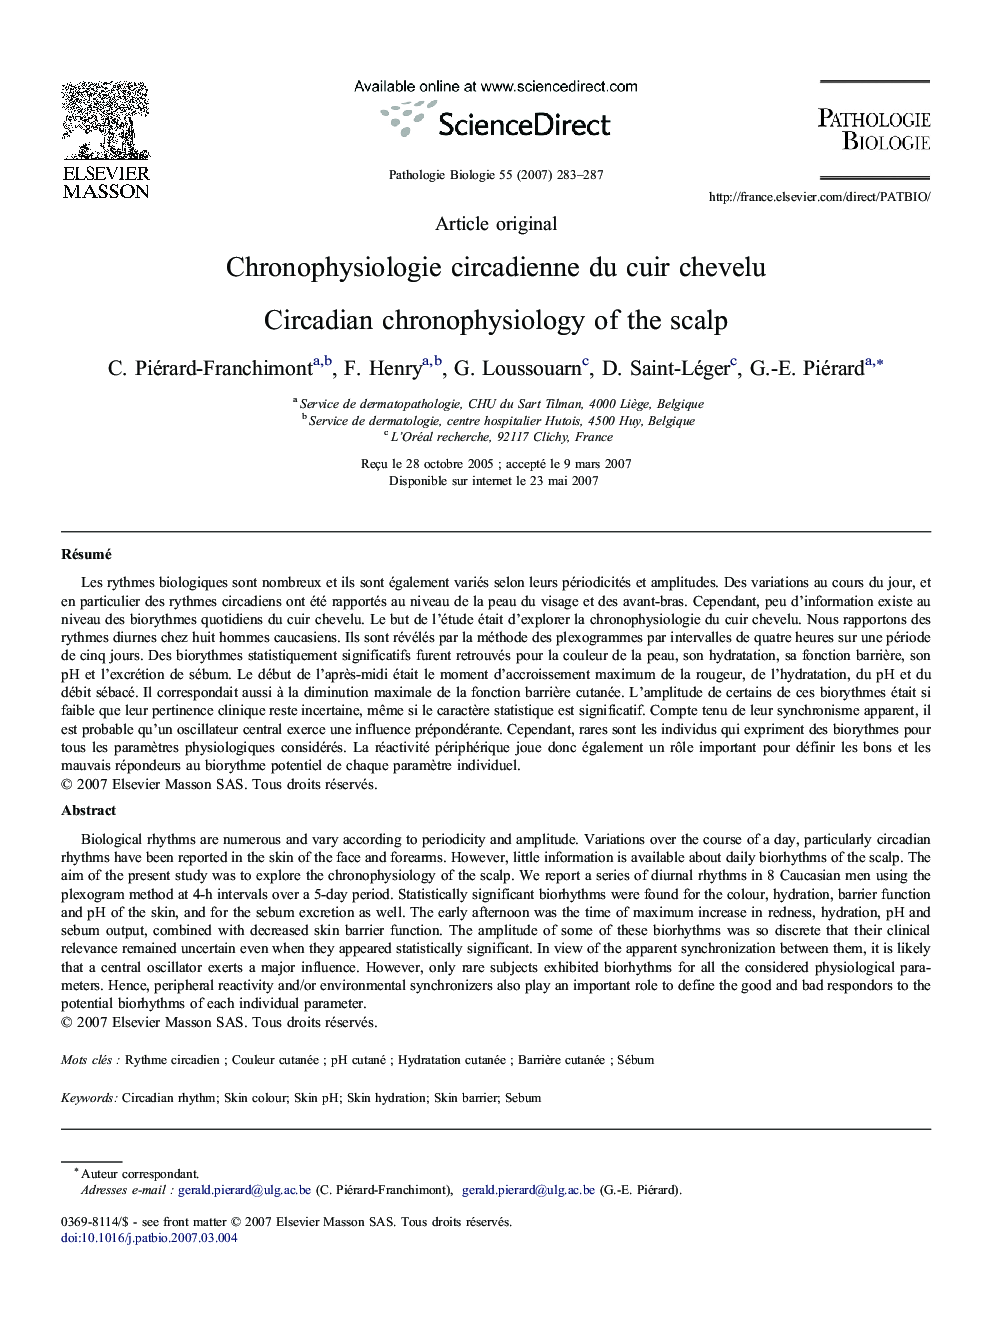 Chronophysiologie circadienne du cuir chevelu